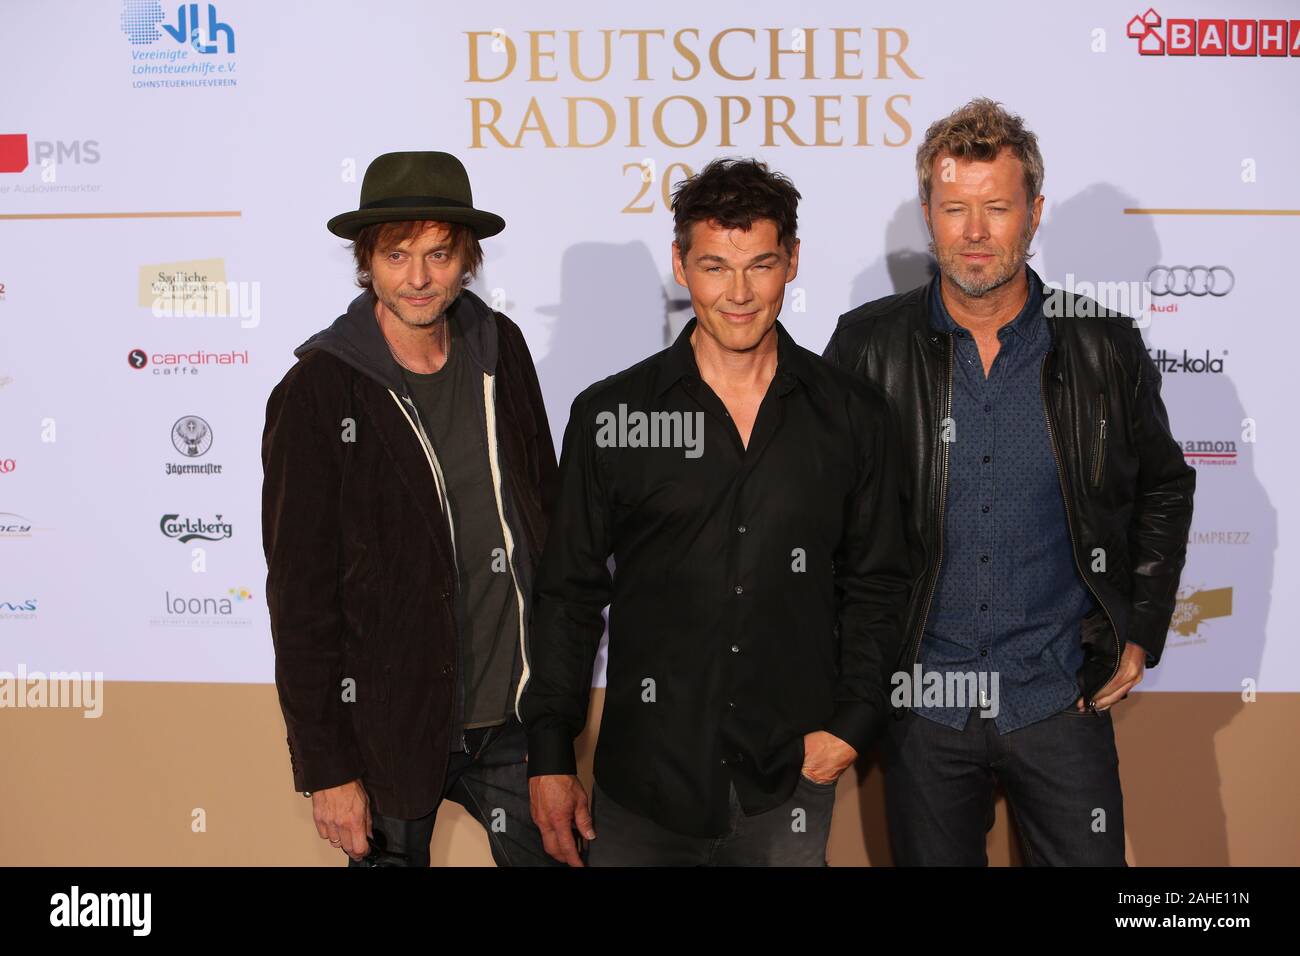 Pal Waaktaar-Savoy, Magne Furuholmen und Morten Harket (a-ha) bei der Verleihung vom Deutschen Radiopreis 2015 im Schuppen 52. Hamburg, 03.09.2015 Stockfoto